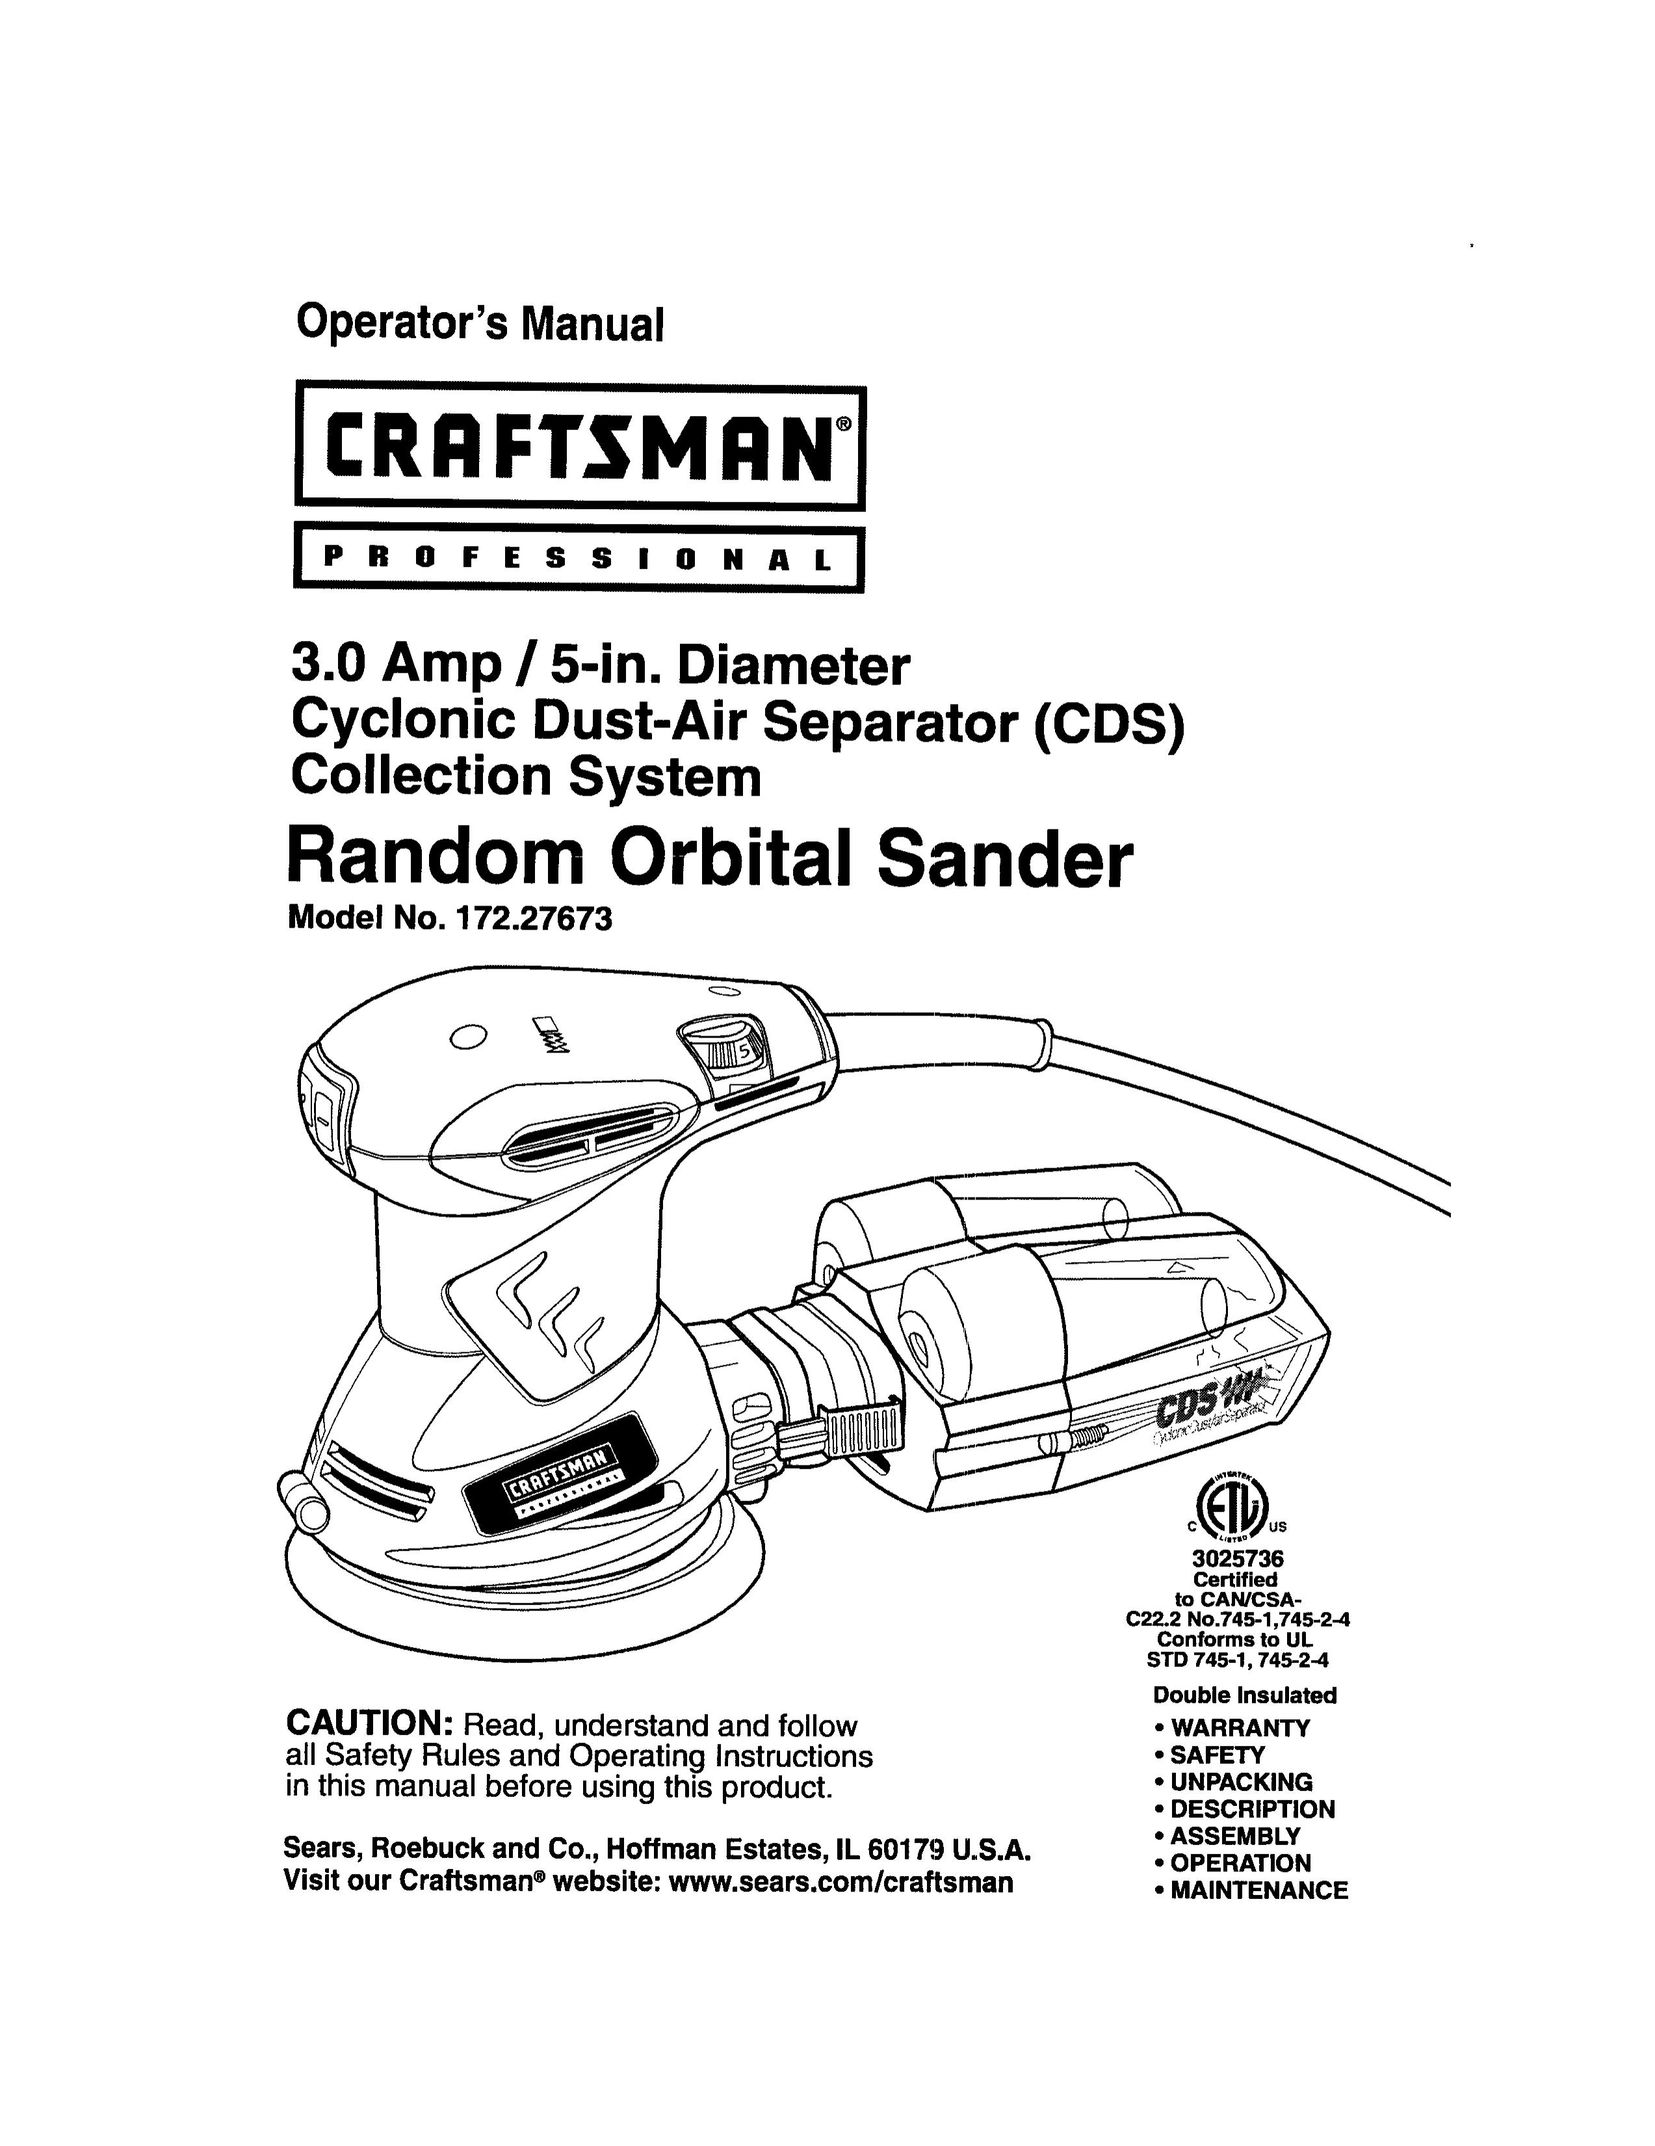 Craftsman 172.27673 Sander User Manual